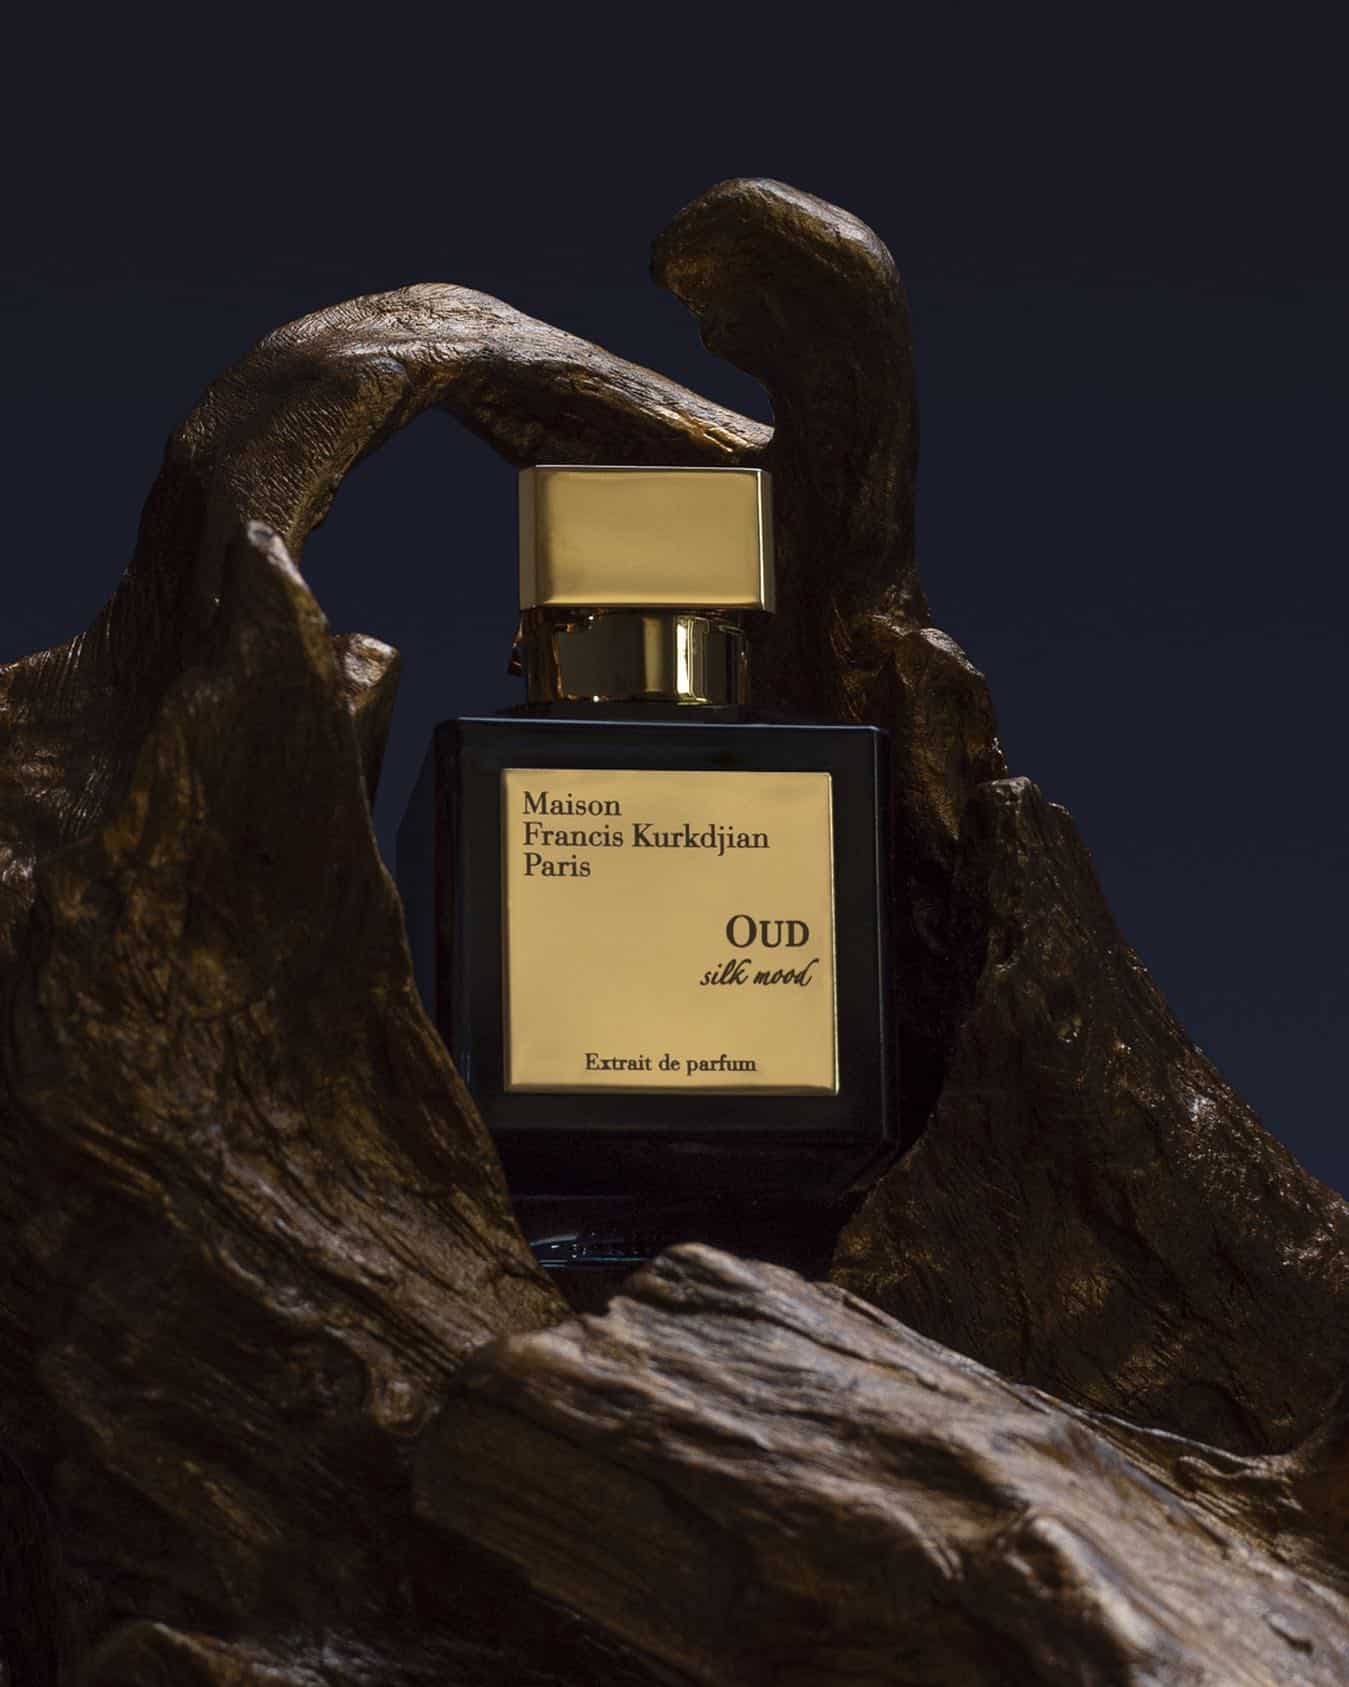 a bottle of Oud Silk mood by Maison Francis Kurkdjian